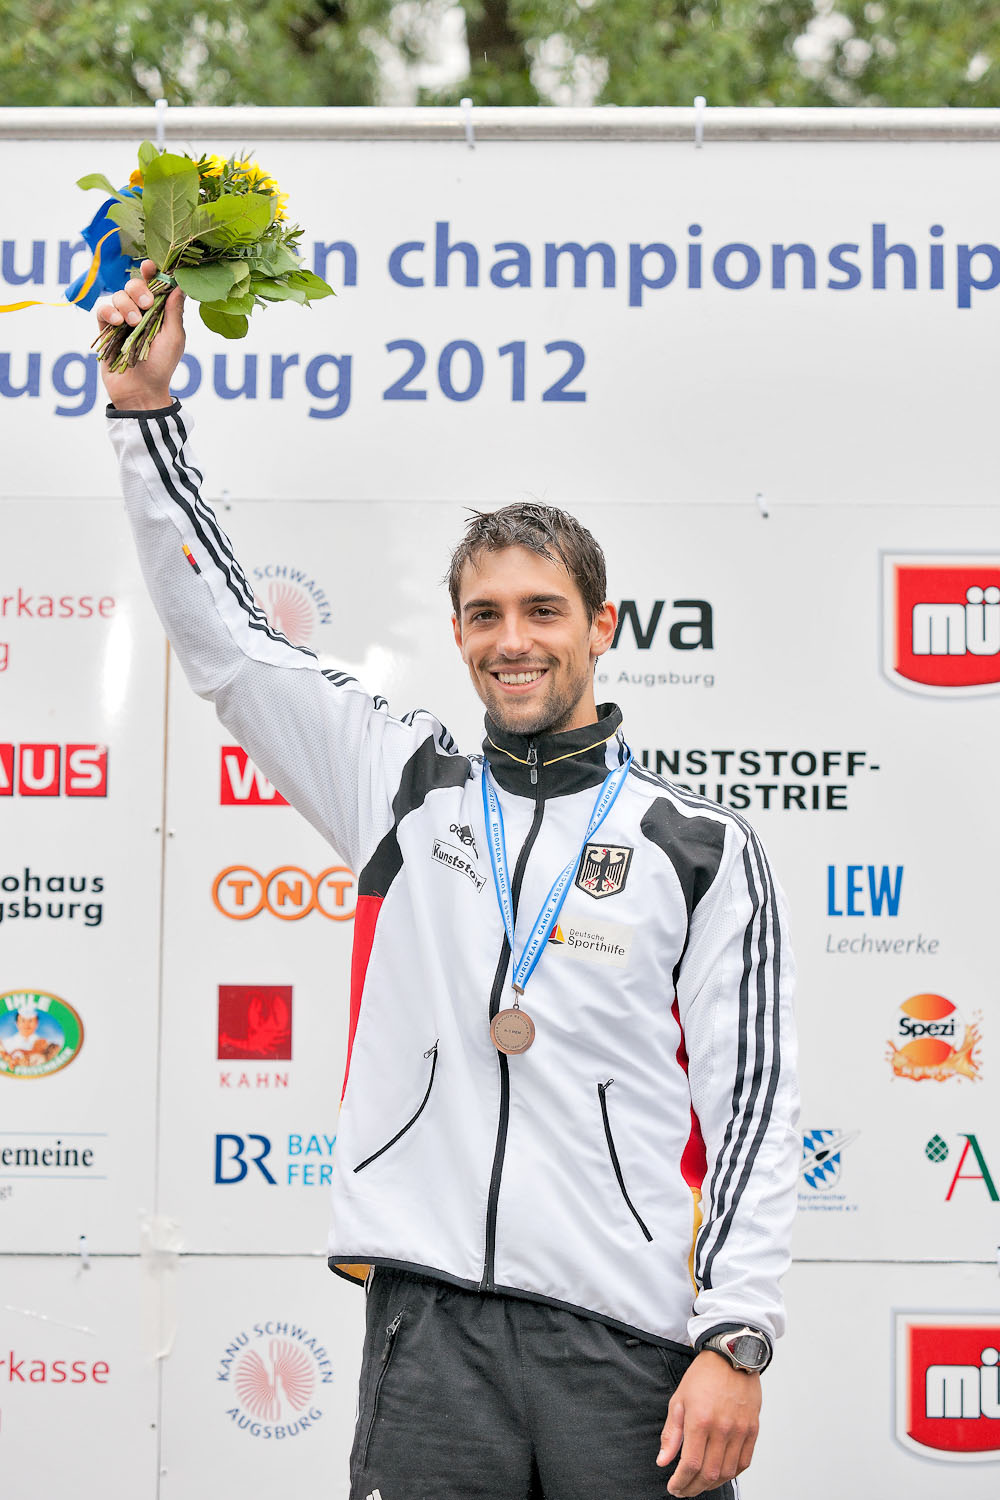 Vizeeuropameister Team / 3. Platz Einzel (Augsburg, GER)